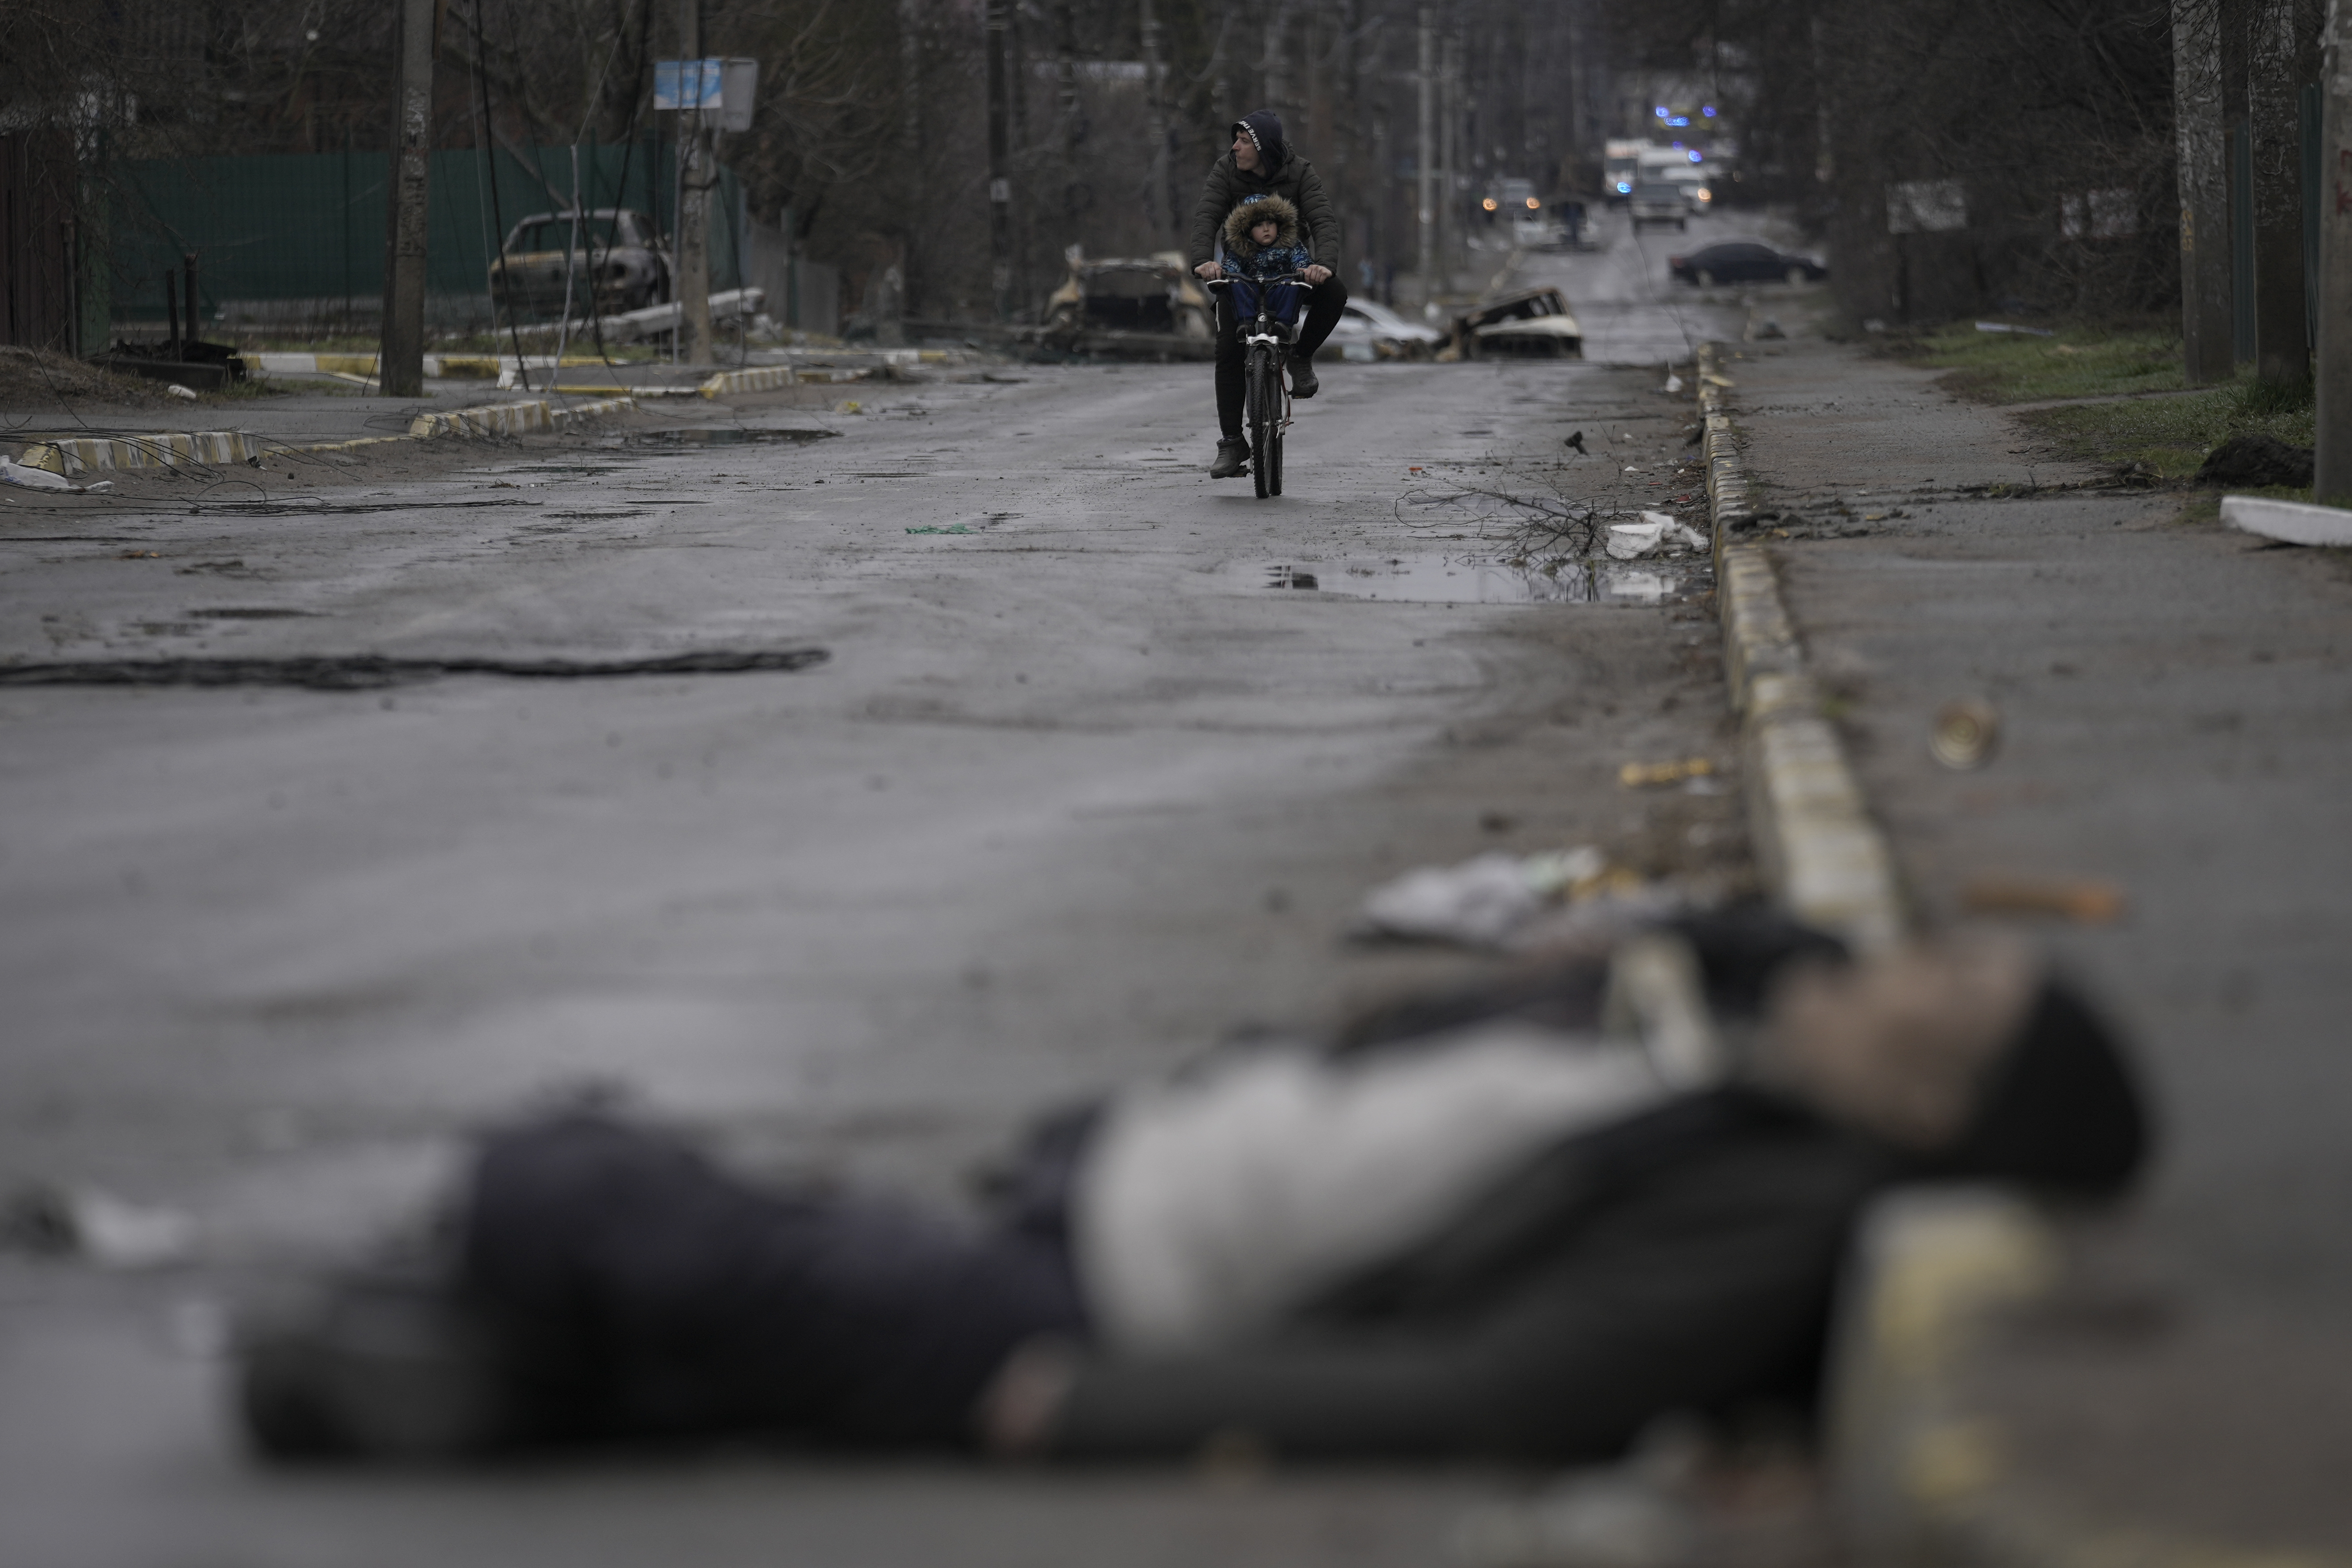 Un hombre y un niño andan en bicicleta mientras cuerpos de civiles yacen en una calle de Bucha, en las afueras de Kiev, Ucrania, el 2 de abril de 2022. Bucha, en la periferia noroccidental de la capital ucraniana, había estado ocupada por las fuerzas rusas durante aproximadamente un mes. Fue tomada mientras éstas avanzaban hacia Kiev al inicio de la invasión de Ucrania que comenzó a finales de febrero de 2022. Cuando se retiraron, dejaron a su paso escenas de horror. (AP Foto/Vadim Ghirda, Archivo)